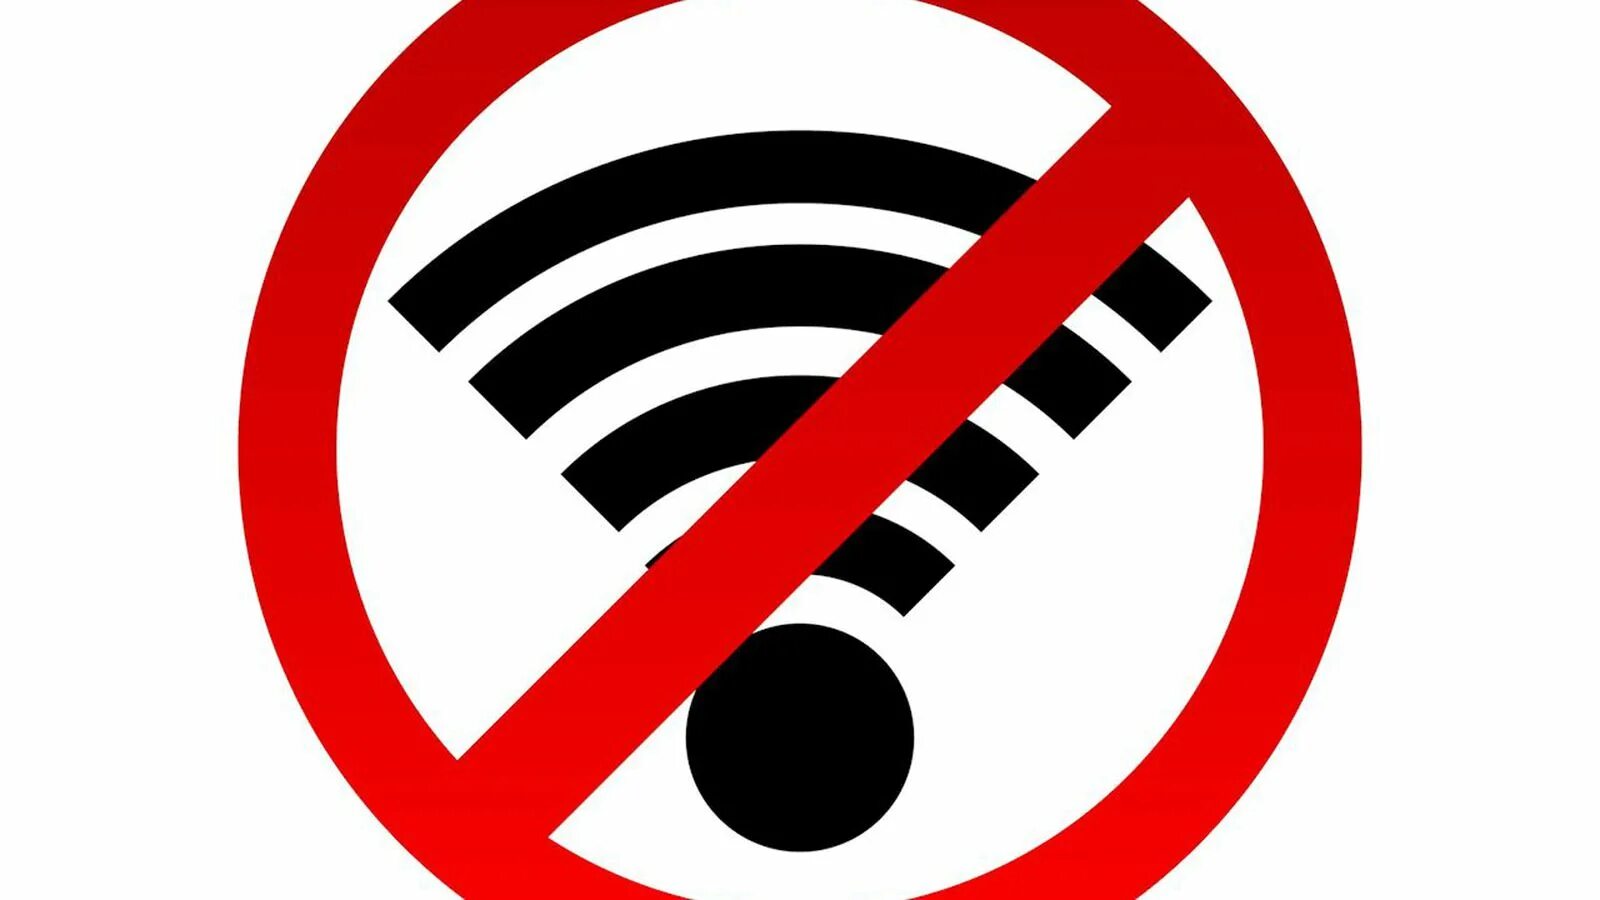 Allow images. Интернет запрещен. Значок перечеркнутого вайфая. Знак запрета. Значок нет сигнала.